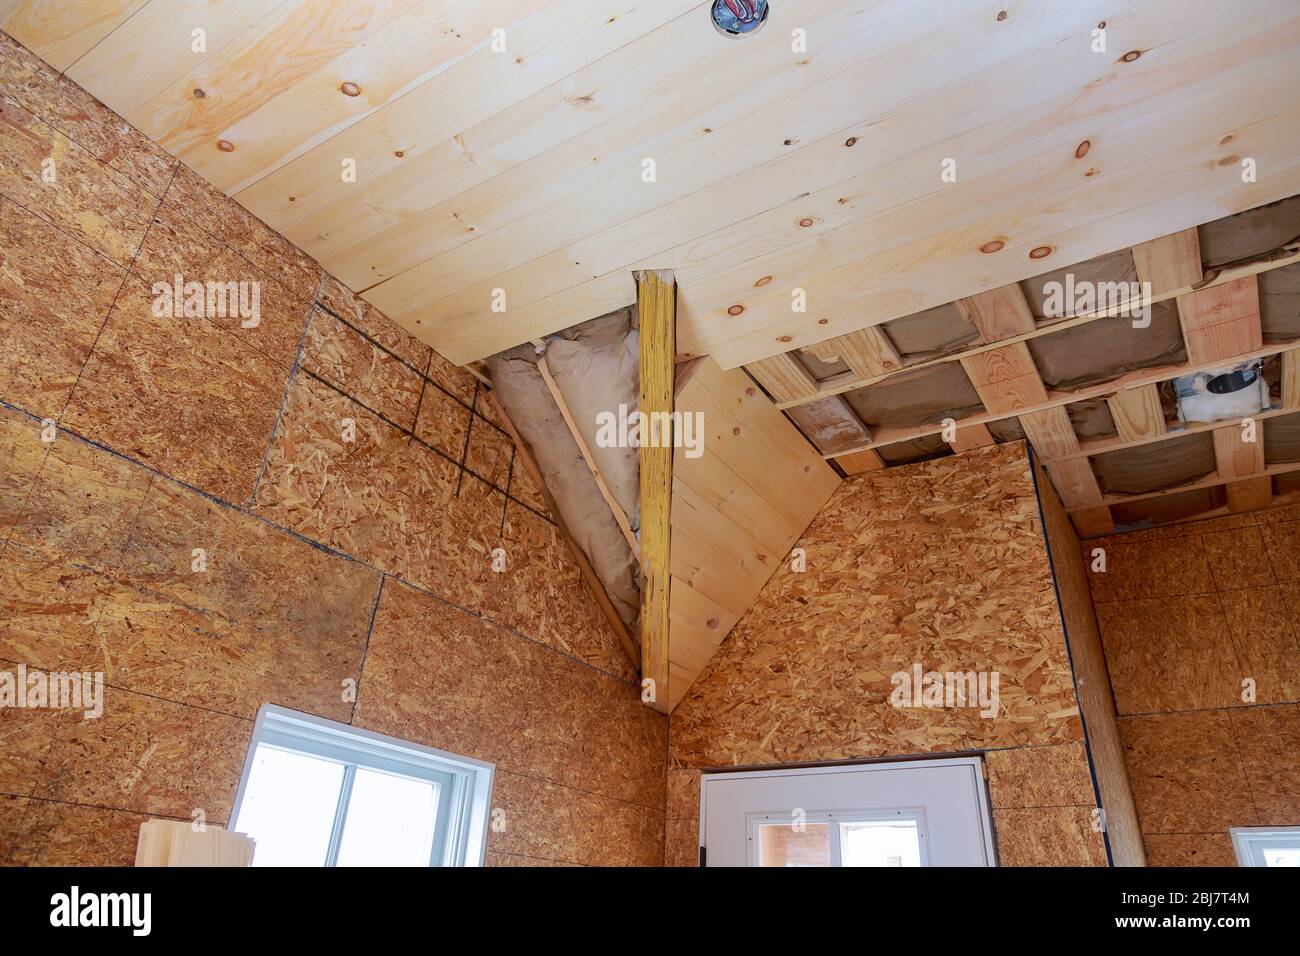 Casa tetto con vetro lana fibra di vetro isolamento termico casa in costruzione casa in casa interna Foto Stock